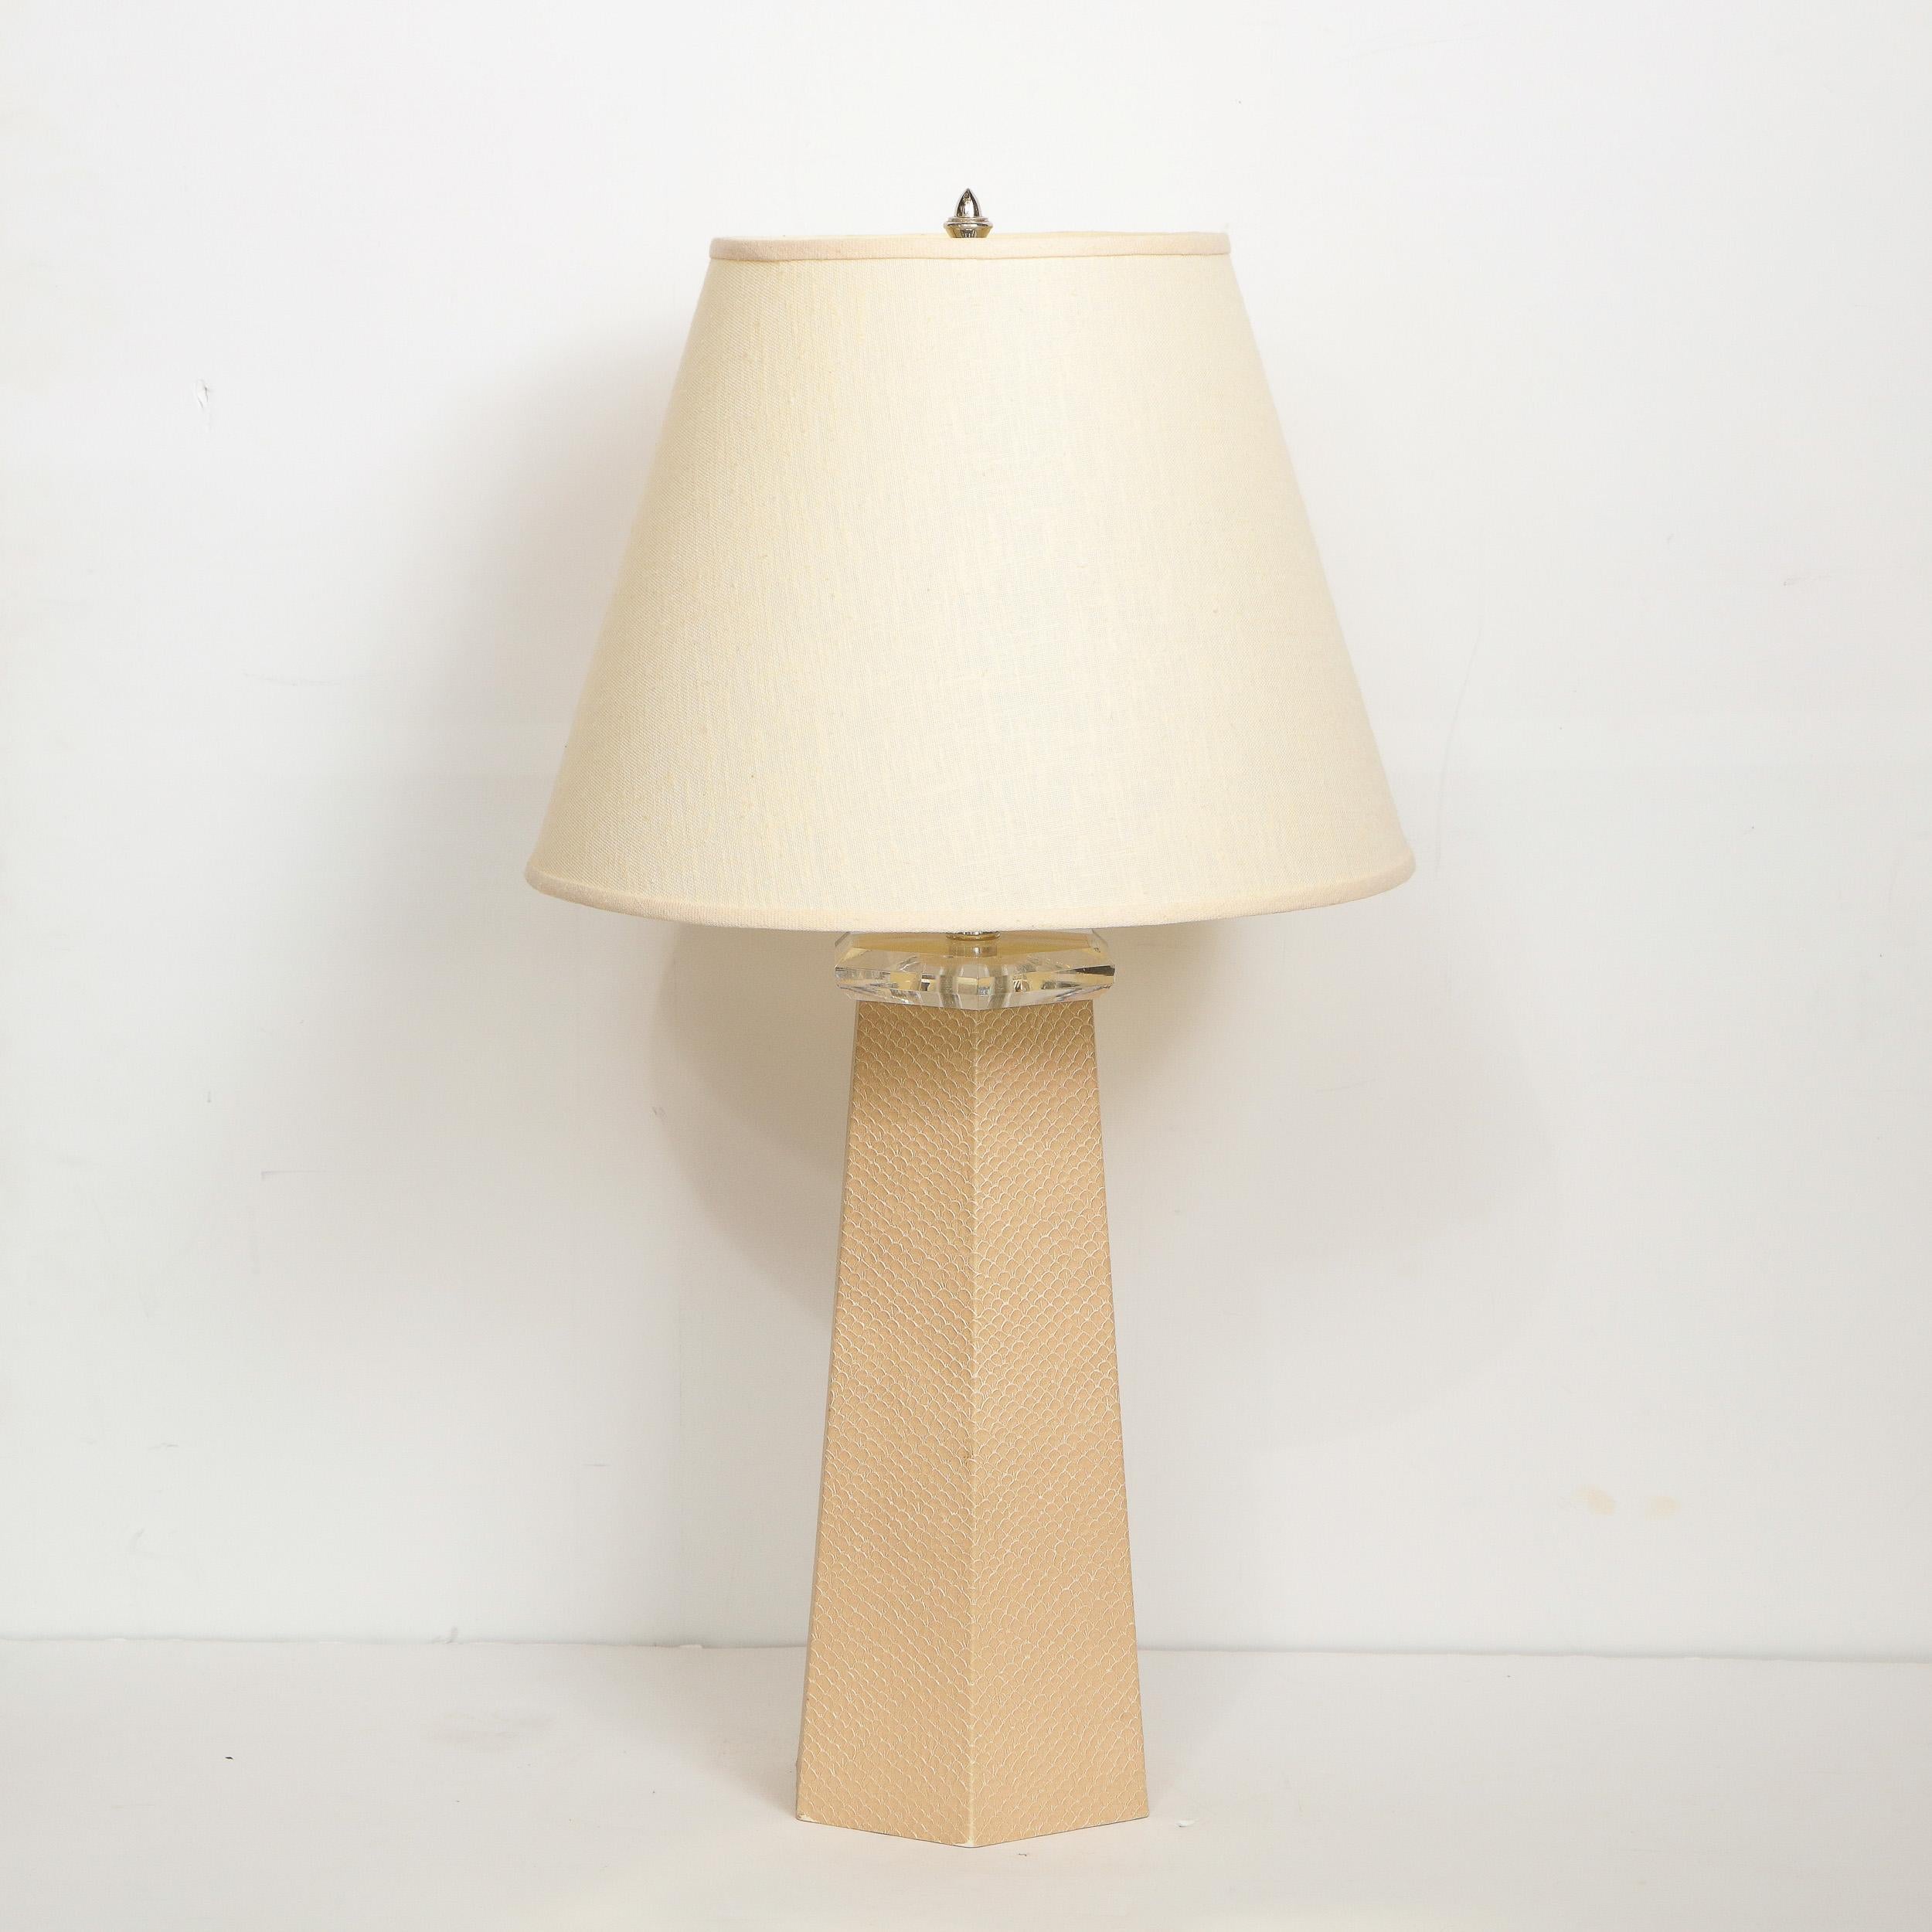 American Signed Karl Springer Modernist Hexagonal Table Lamp in Beige Snakeskin